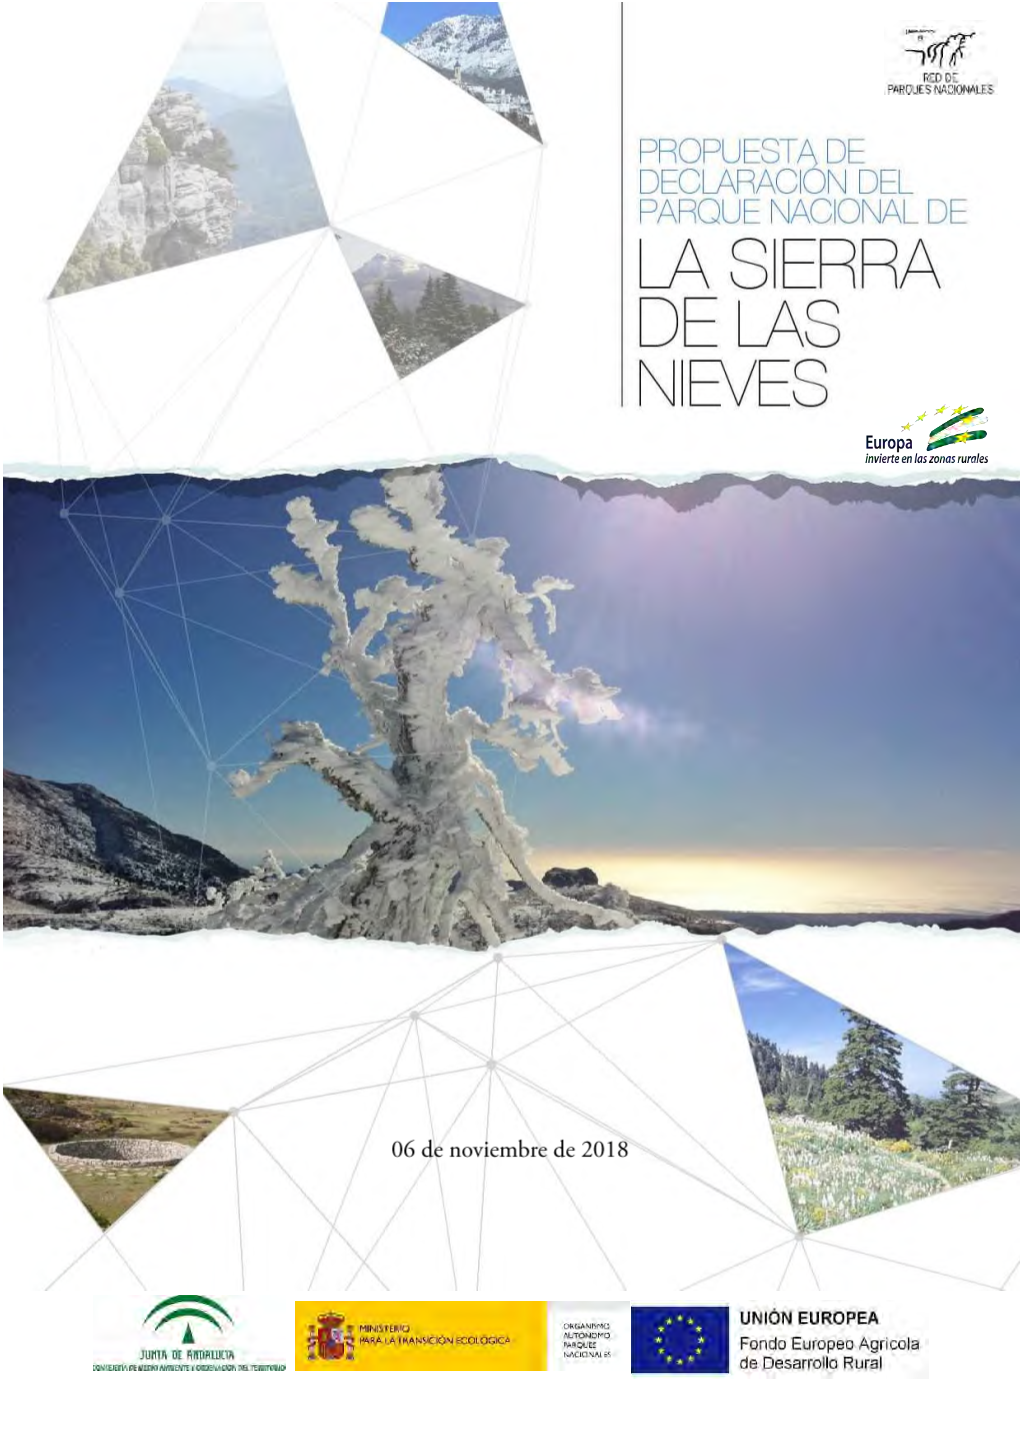 Declaración Del Parque Nacional De La Sierra De Las Nieves